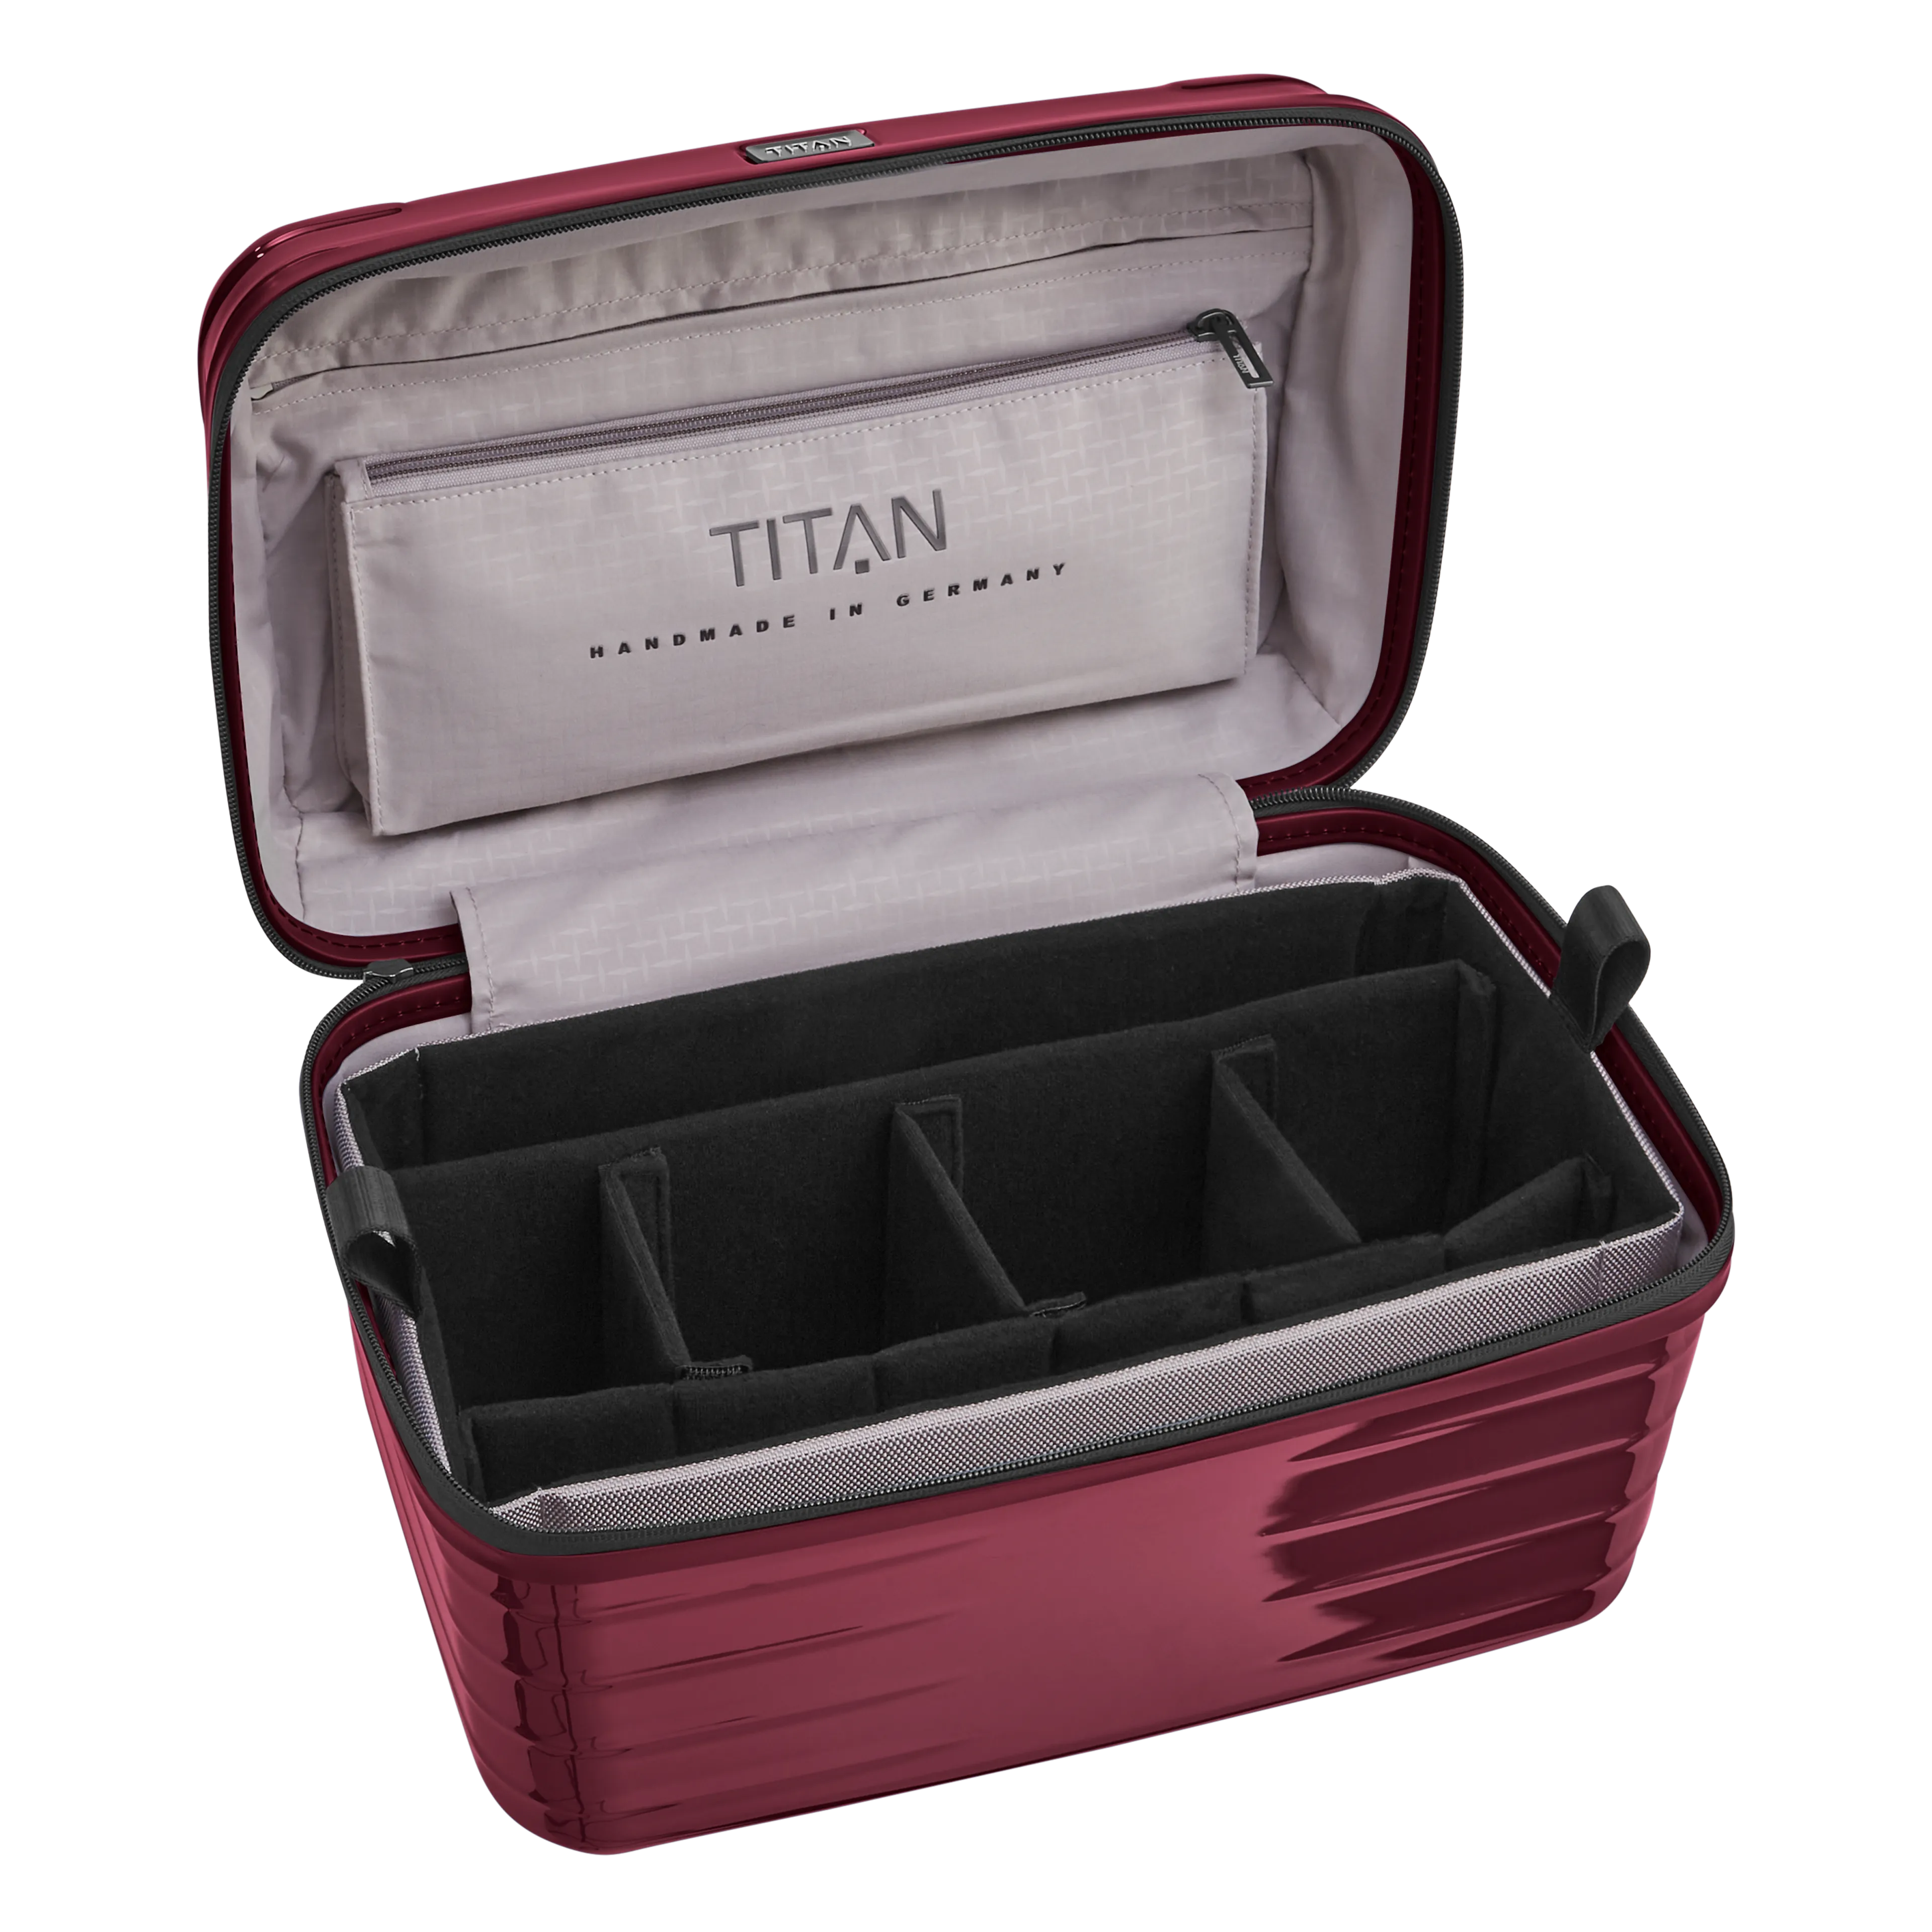 Ein TITAN Beautycase/Kosmetikkoffer der Serie LITRON Innenansicht in kirschrot